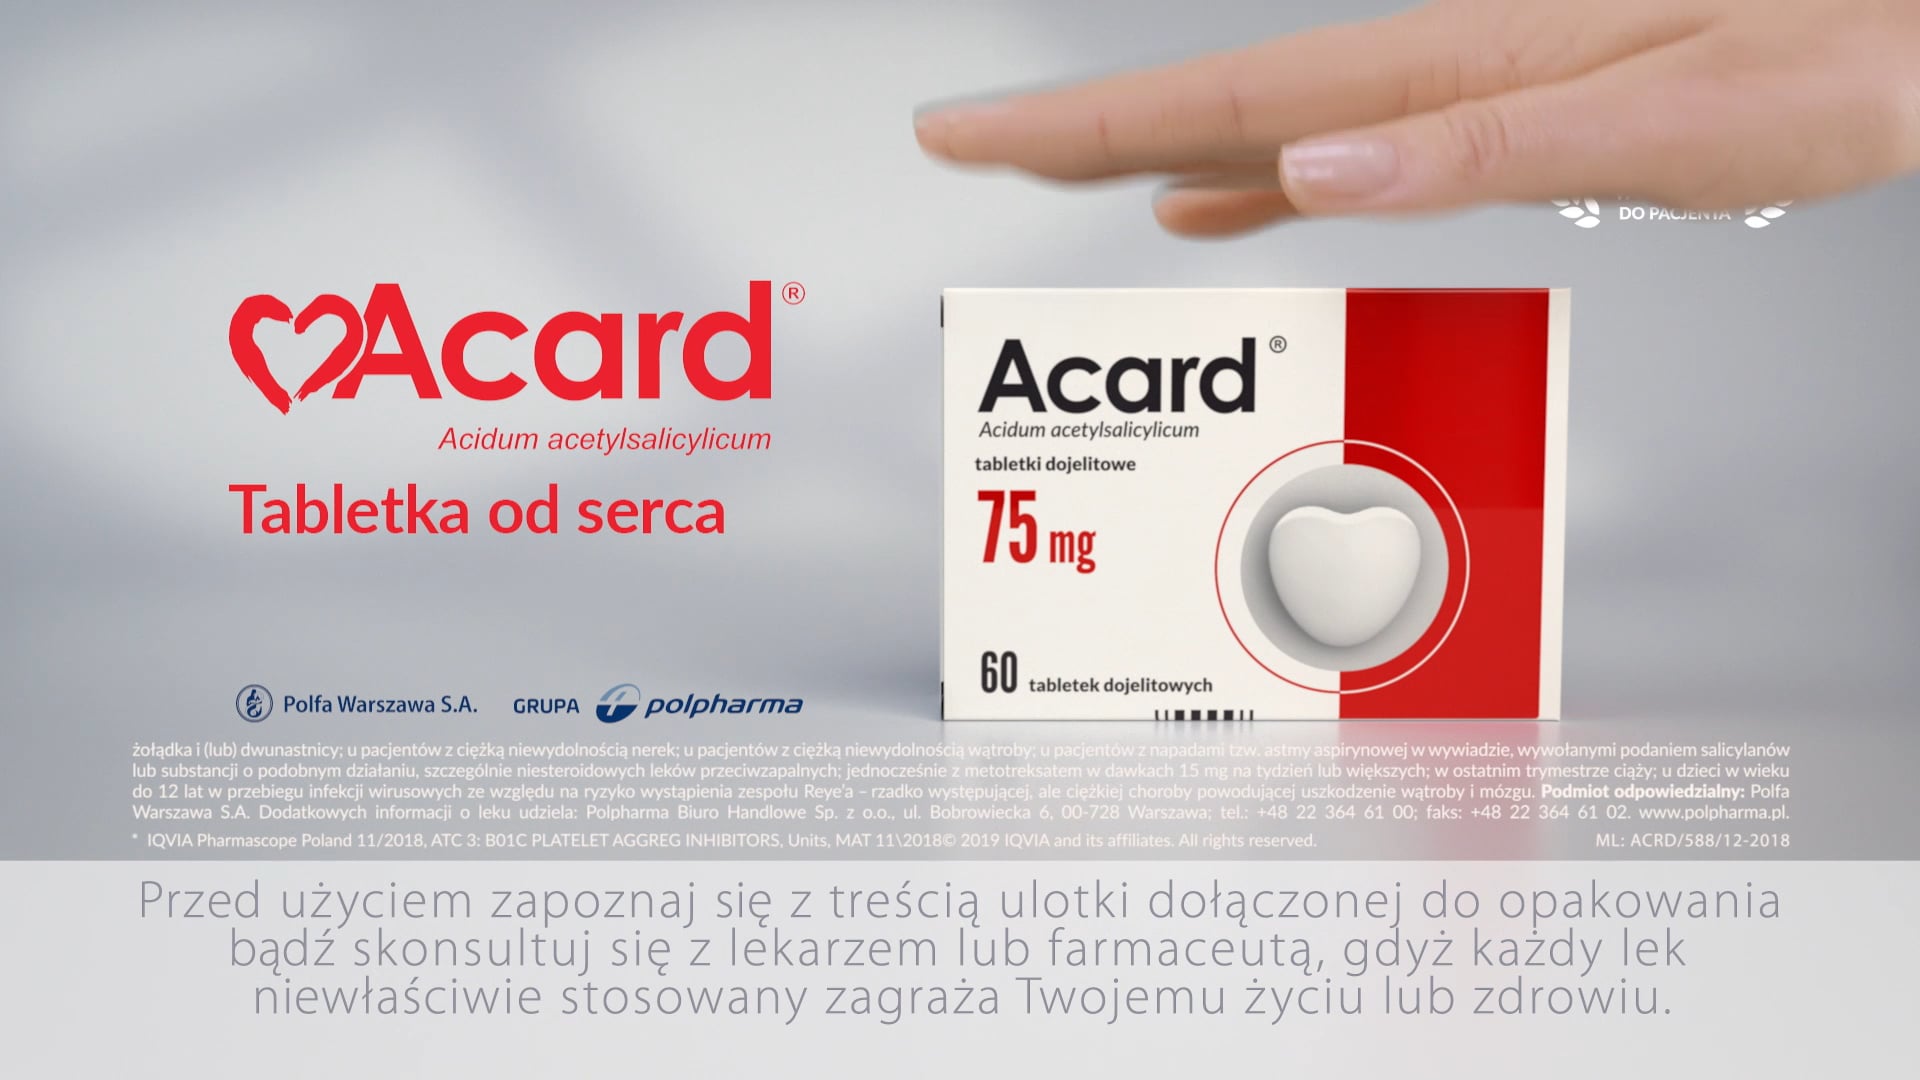 Acard - nowe opakowanie